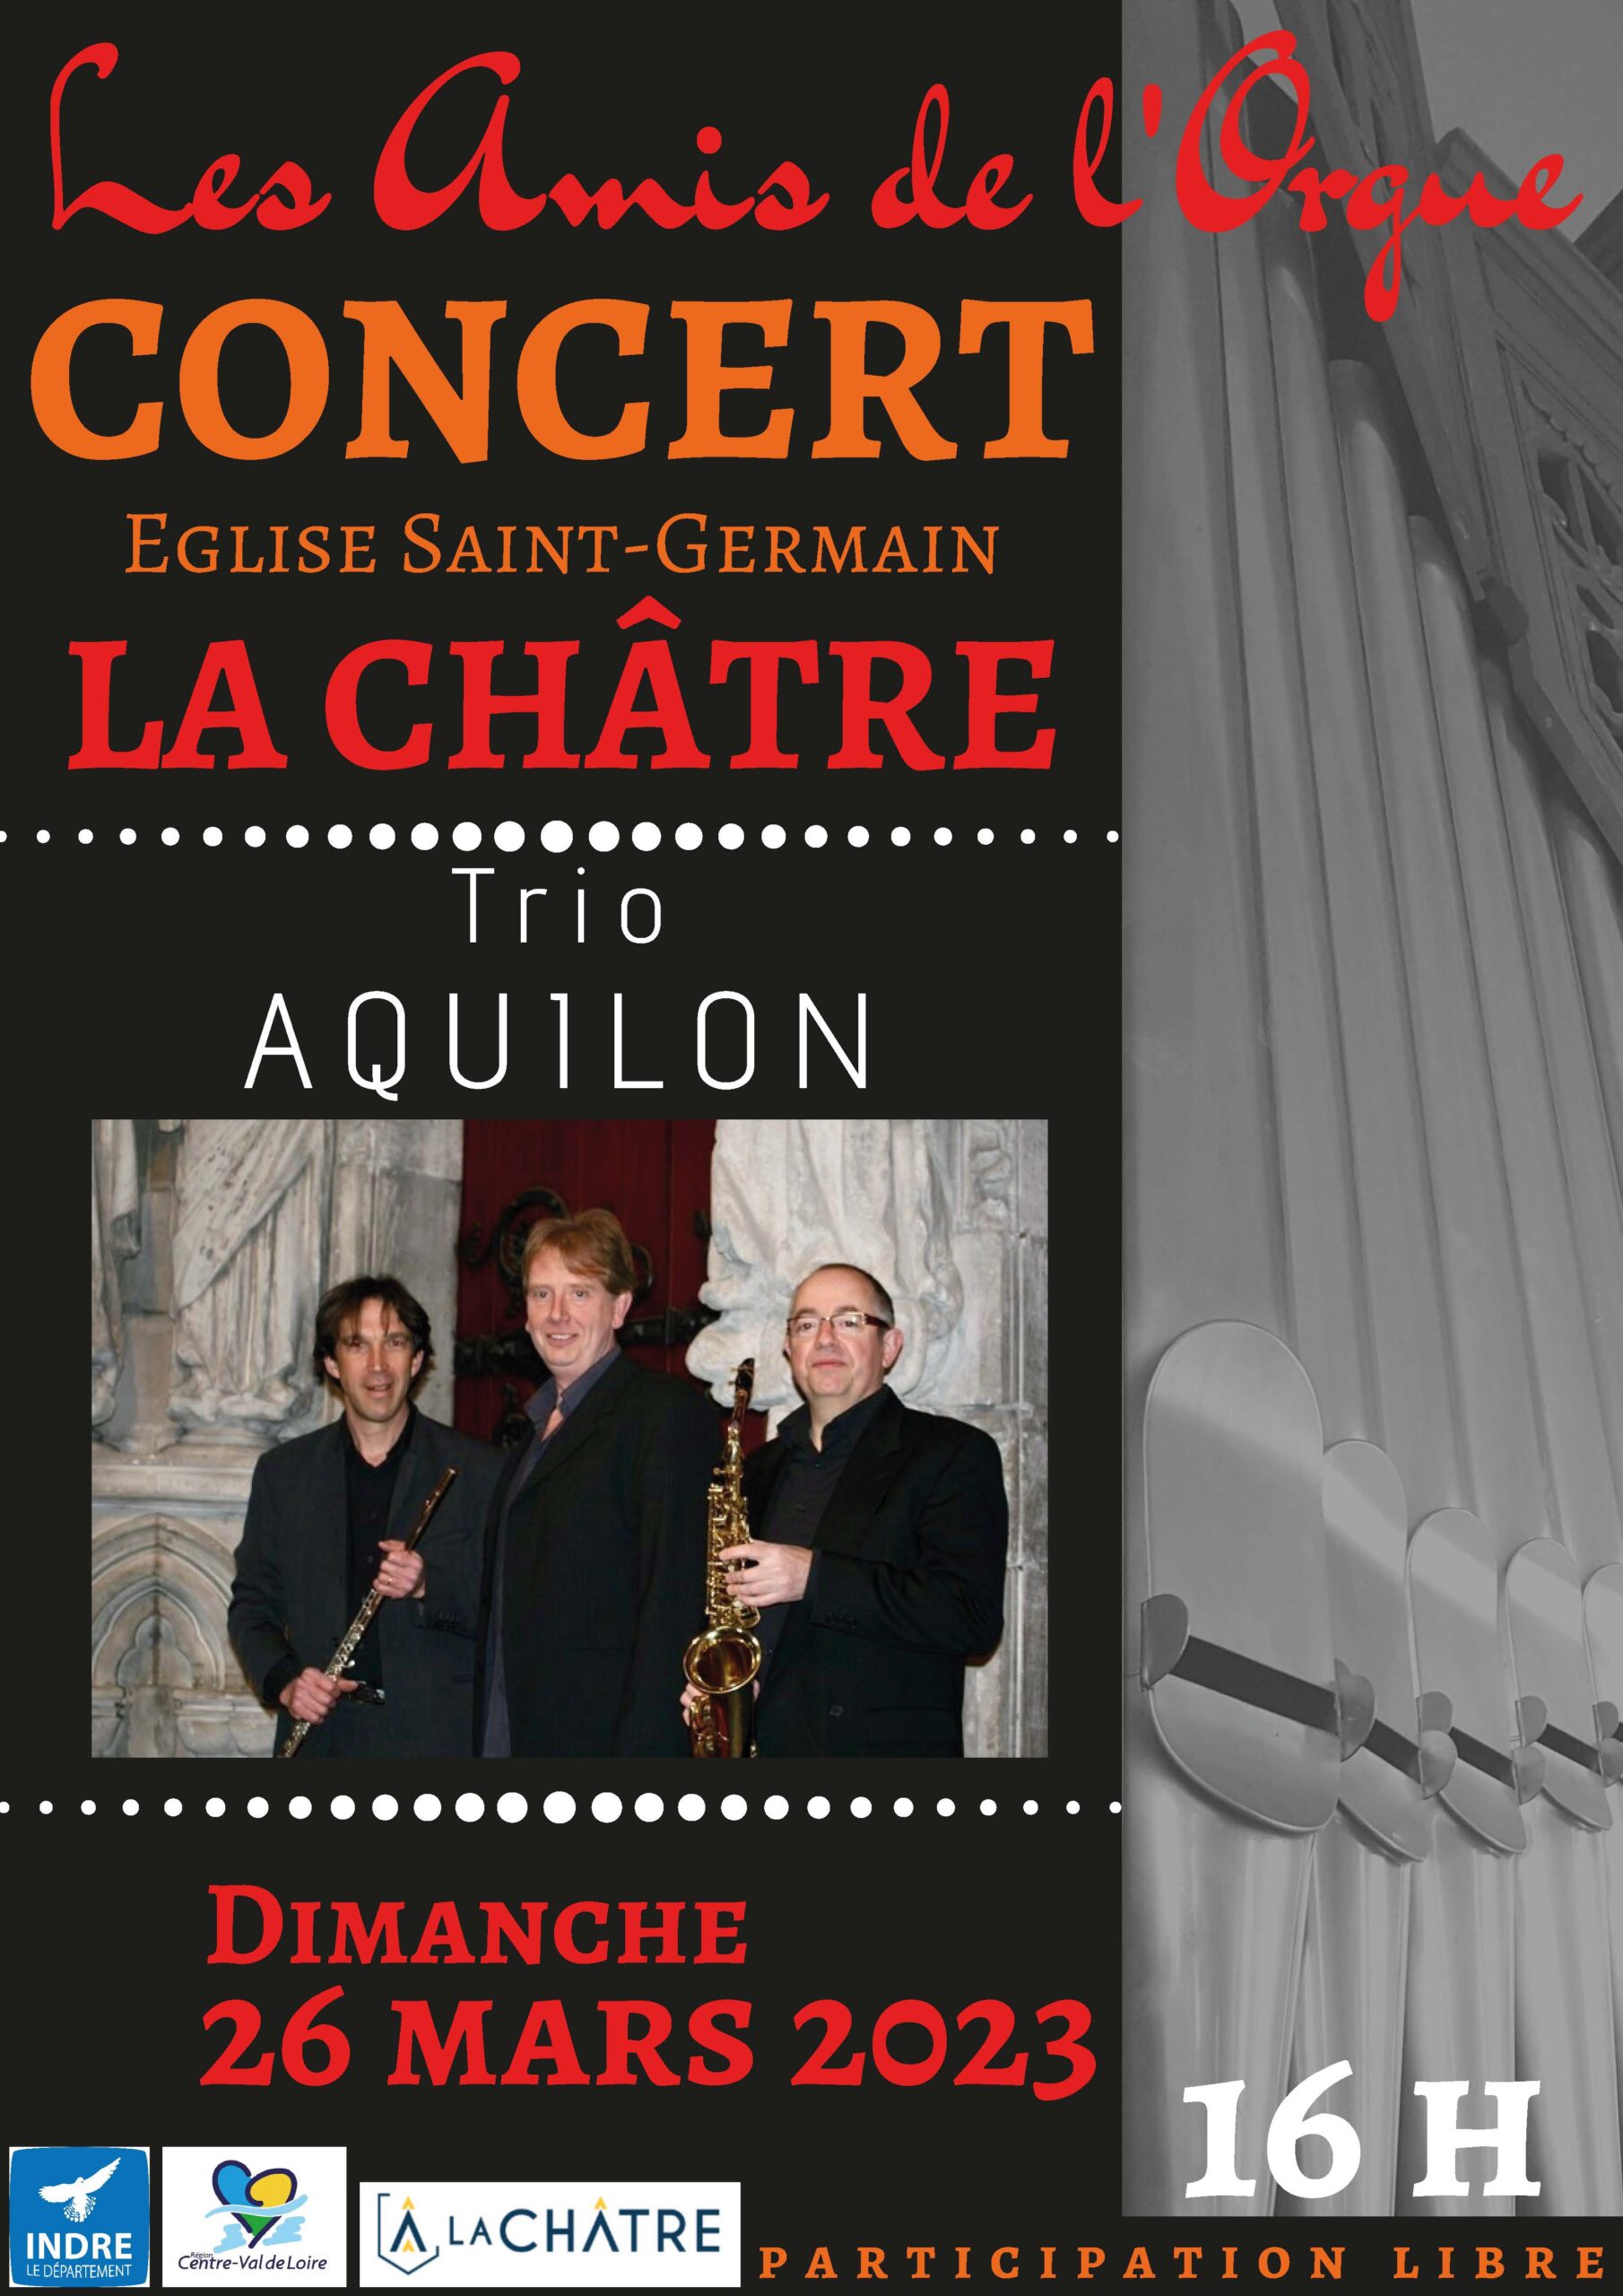 Concert église La Châtre dimanche 26 mars 2023 – Trio Aquilon